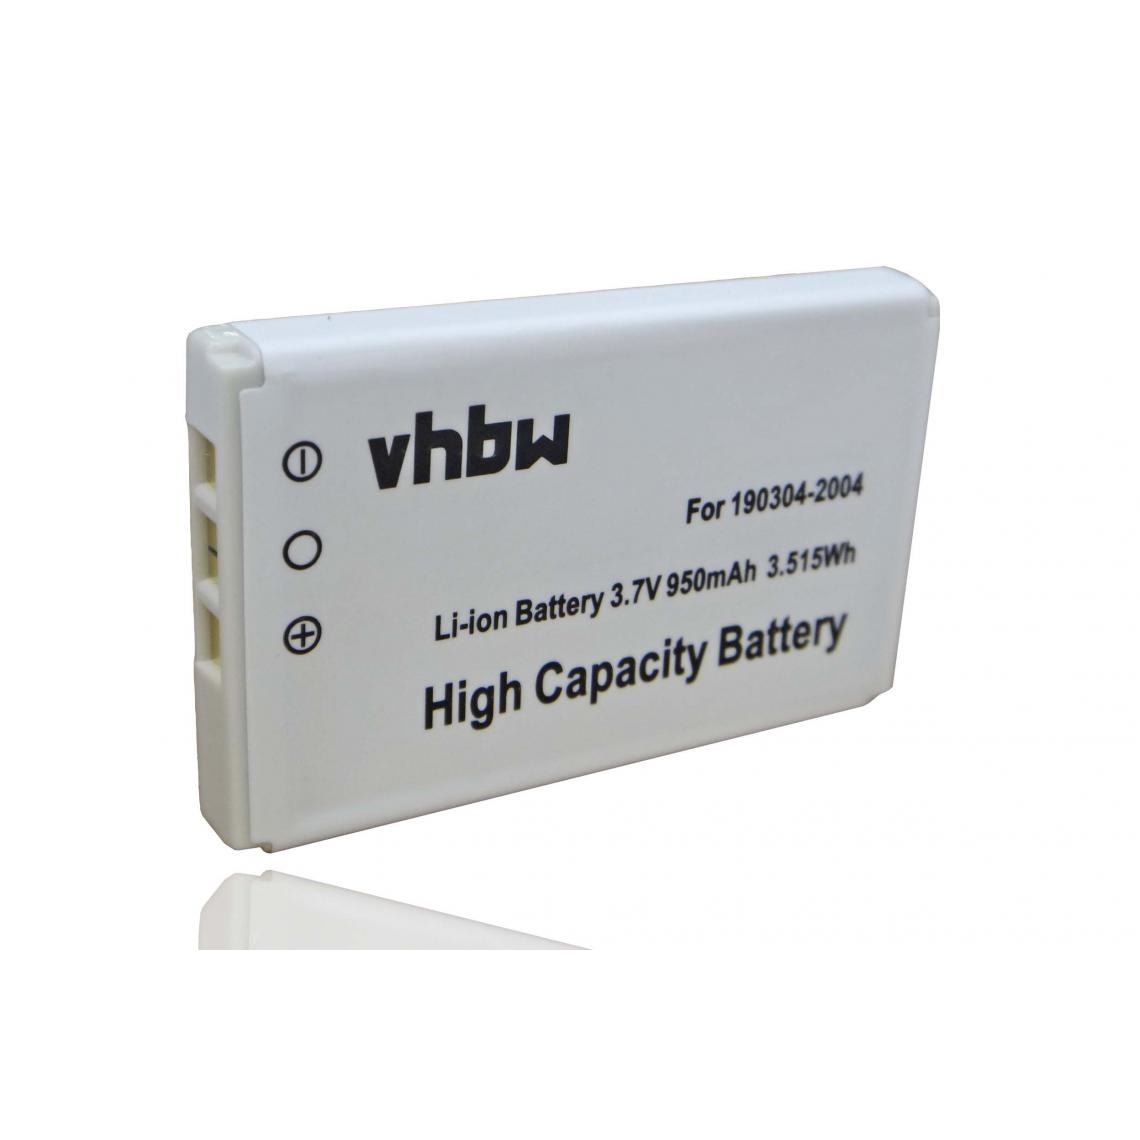 Vhbw - Batterie Li-ION 950mAh, pour clavier Logitech diNovo Edge, DiNovo Mini, Y-RAY81, remplace les modèles 190304-2004, F12440071 et M50A - Accessoires Clavier Ordinateur